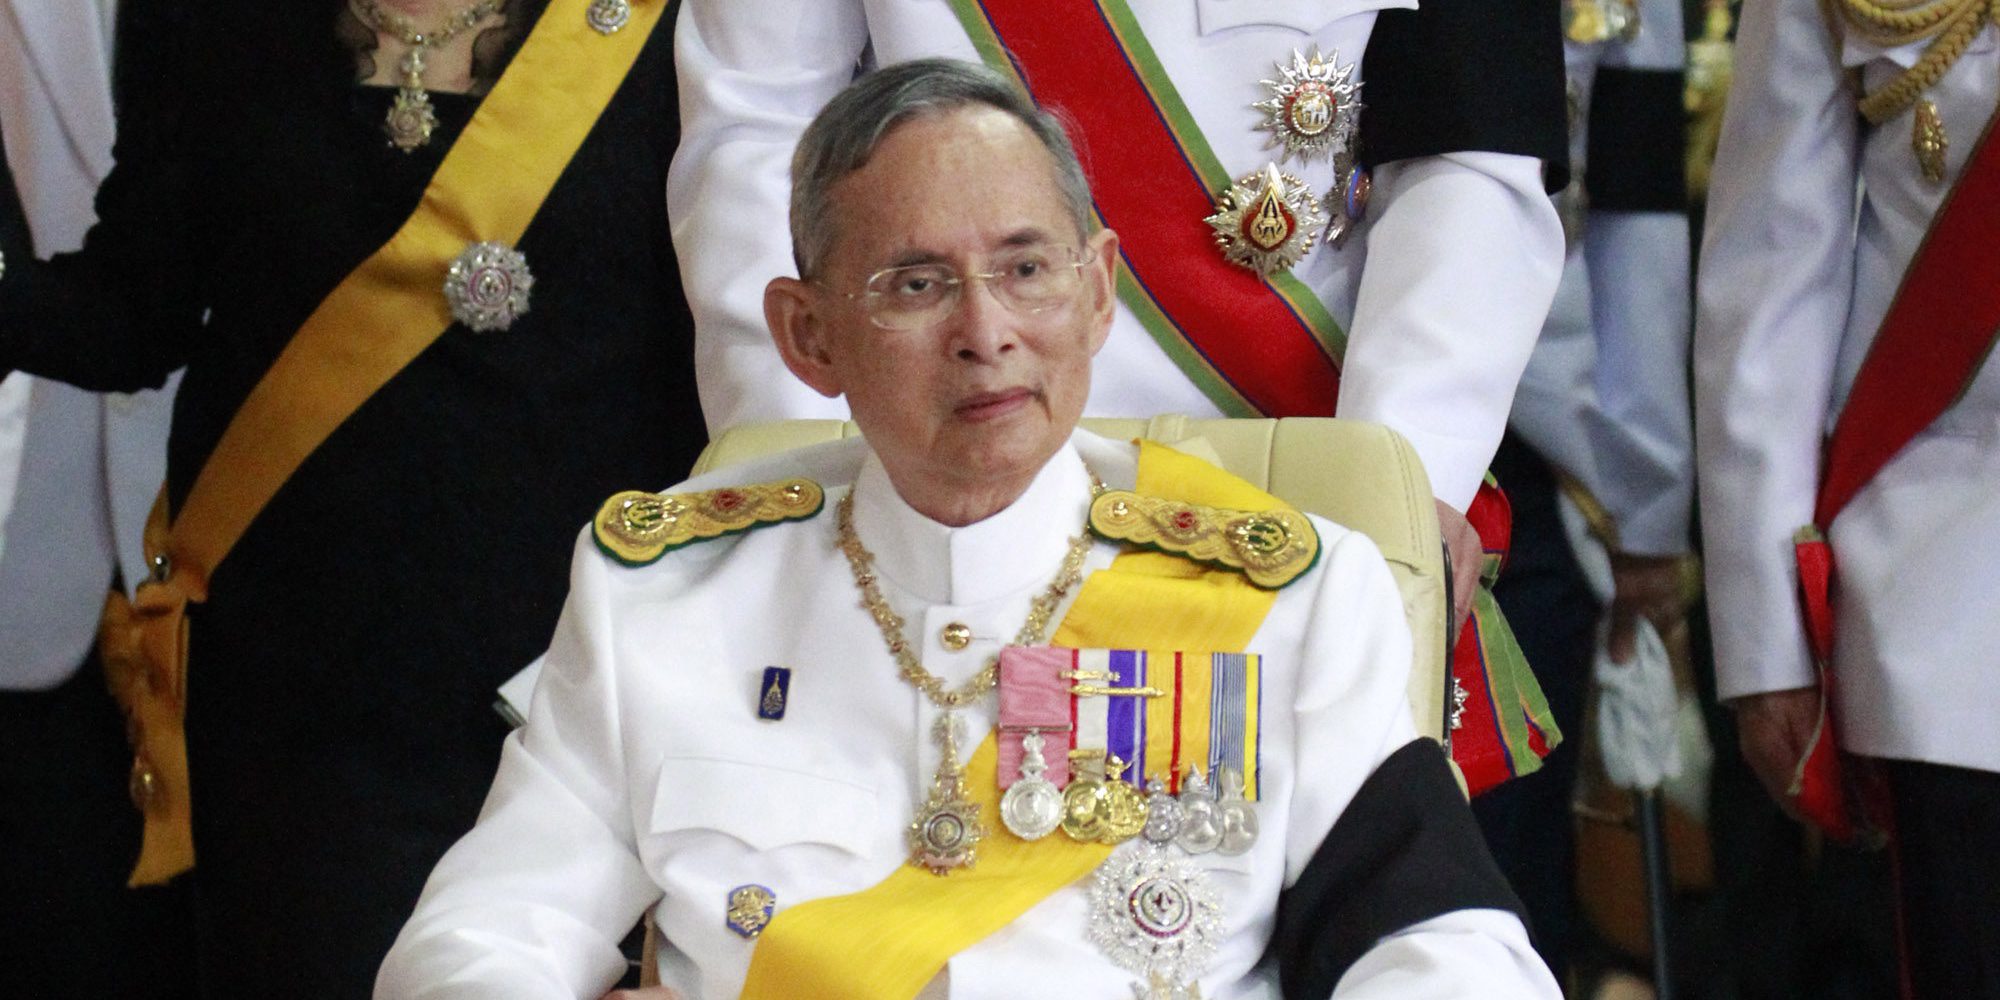 Muere el Rey de Tailandia a los 88 años: adiós al Monarca con el reinado más largo del mundo